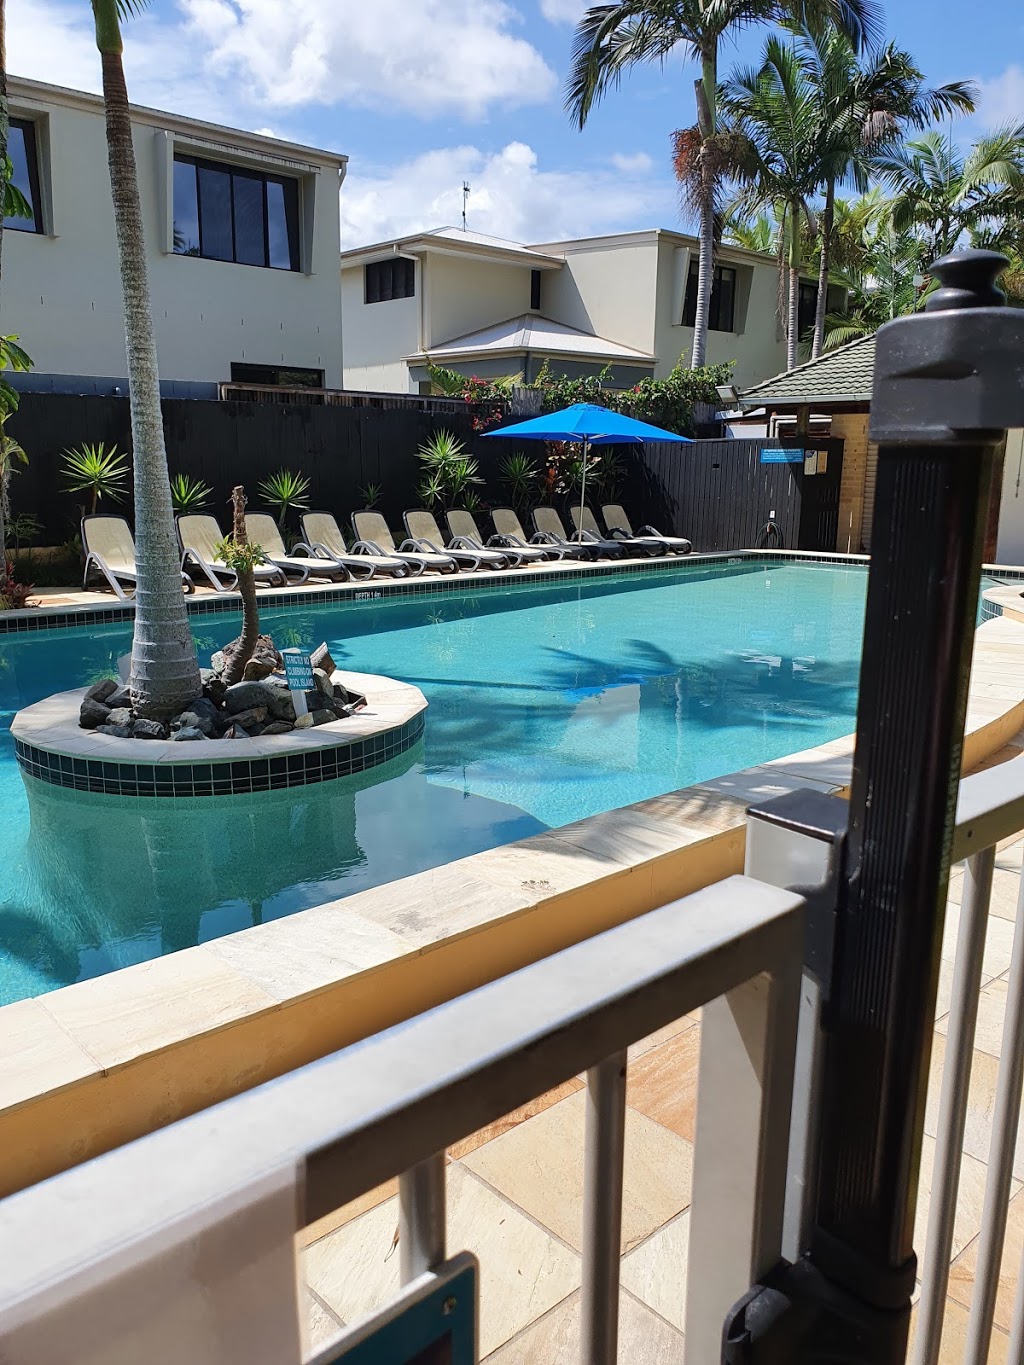 Noosavillage River Resort | 159 Gympie Terrace, Noosaville QLD 4566, Australia | Phone: (07) 5449 7698